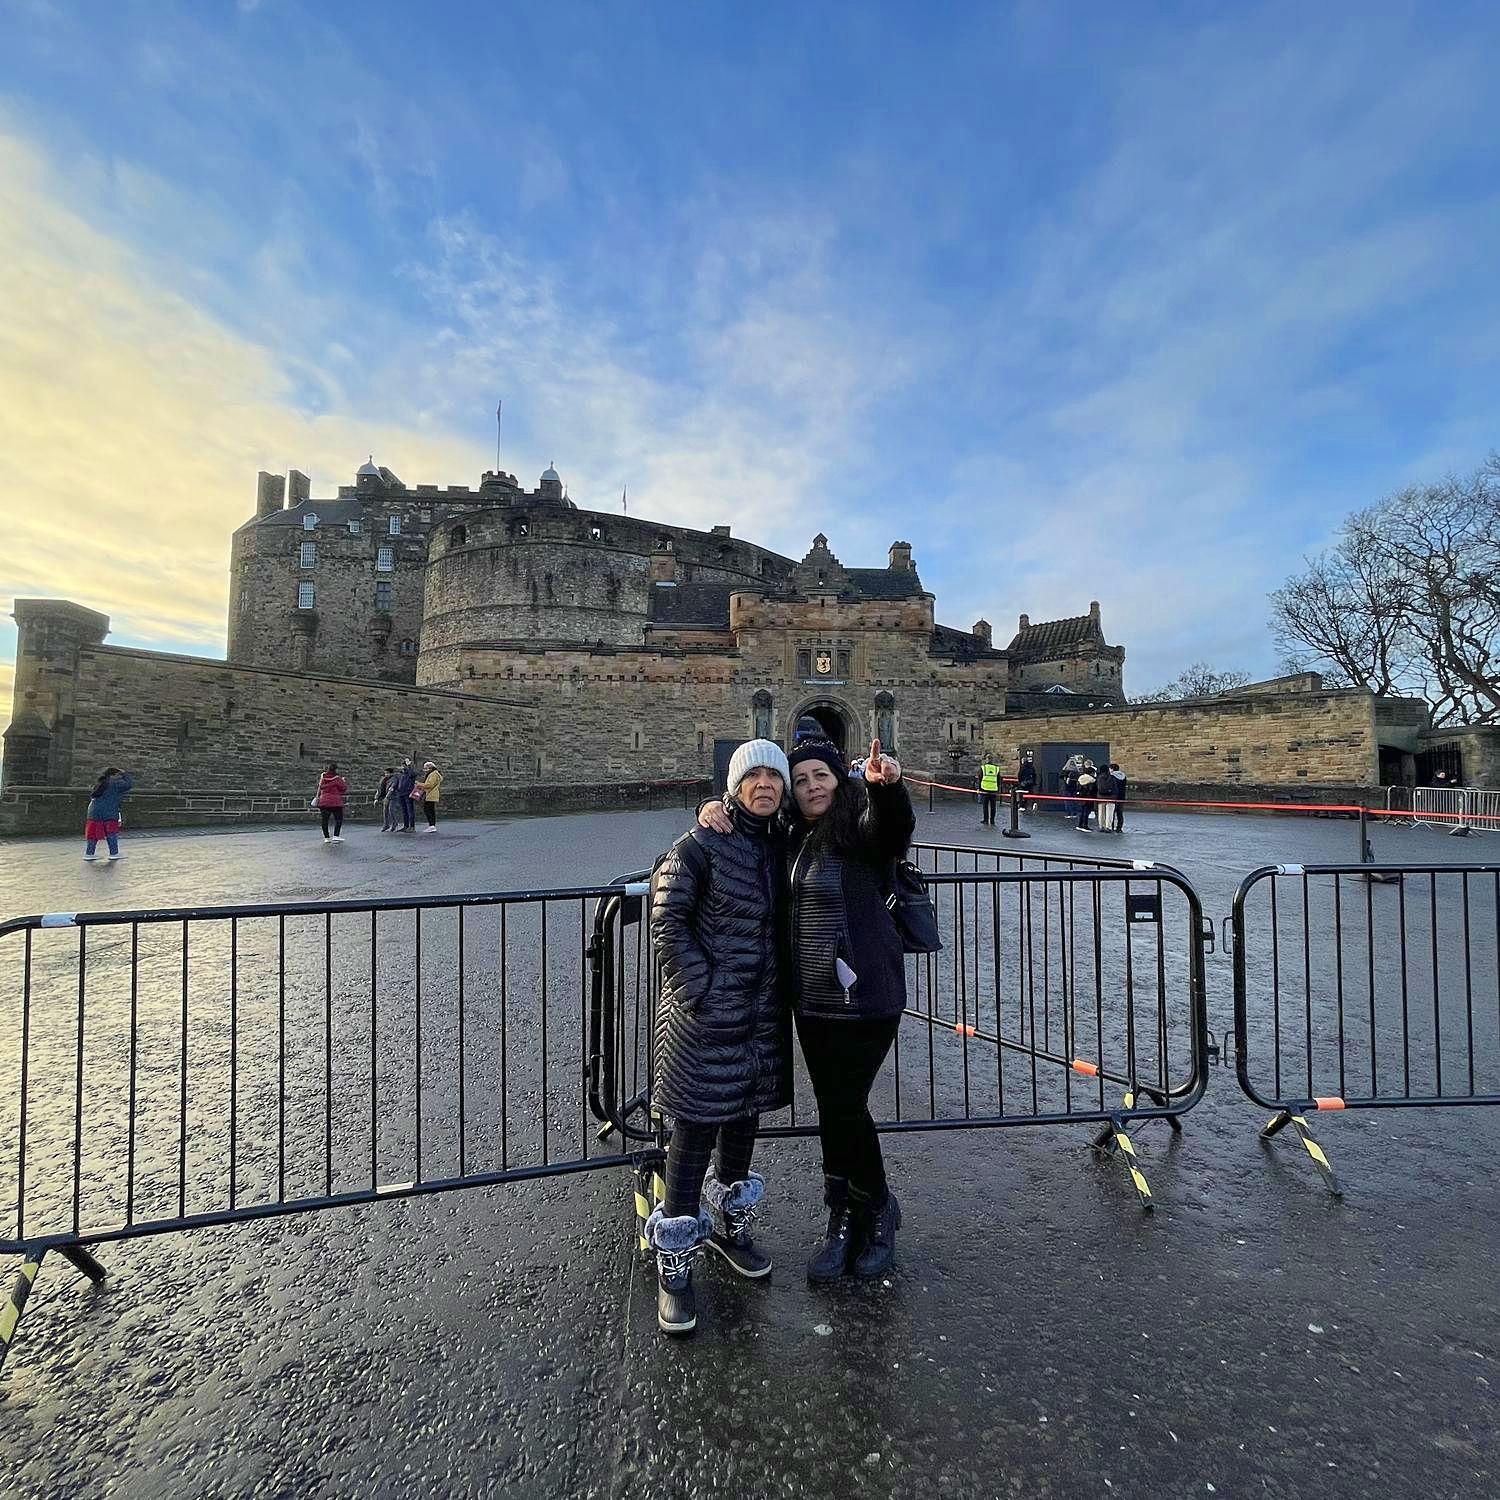 Mira madre... aquel castillo lo deberian hacer Oxxo.
Edinburgh, Escocia 2022.